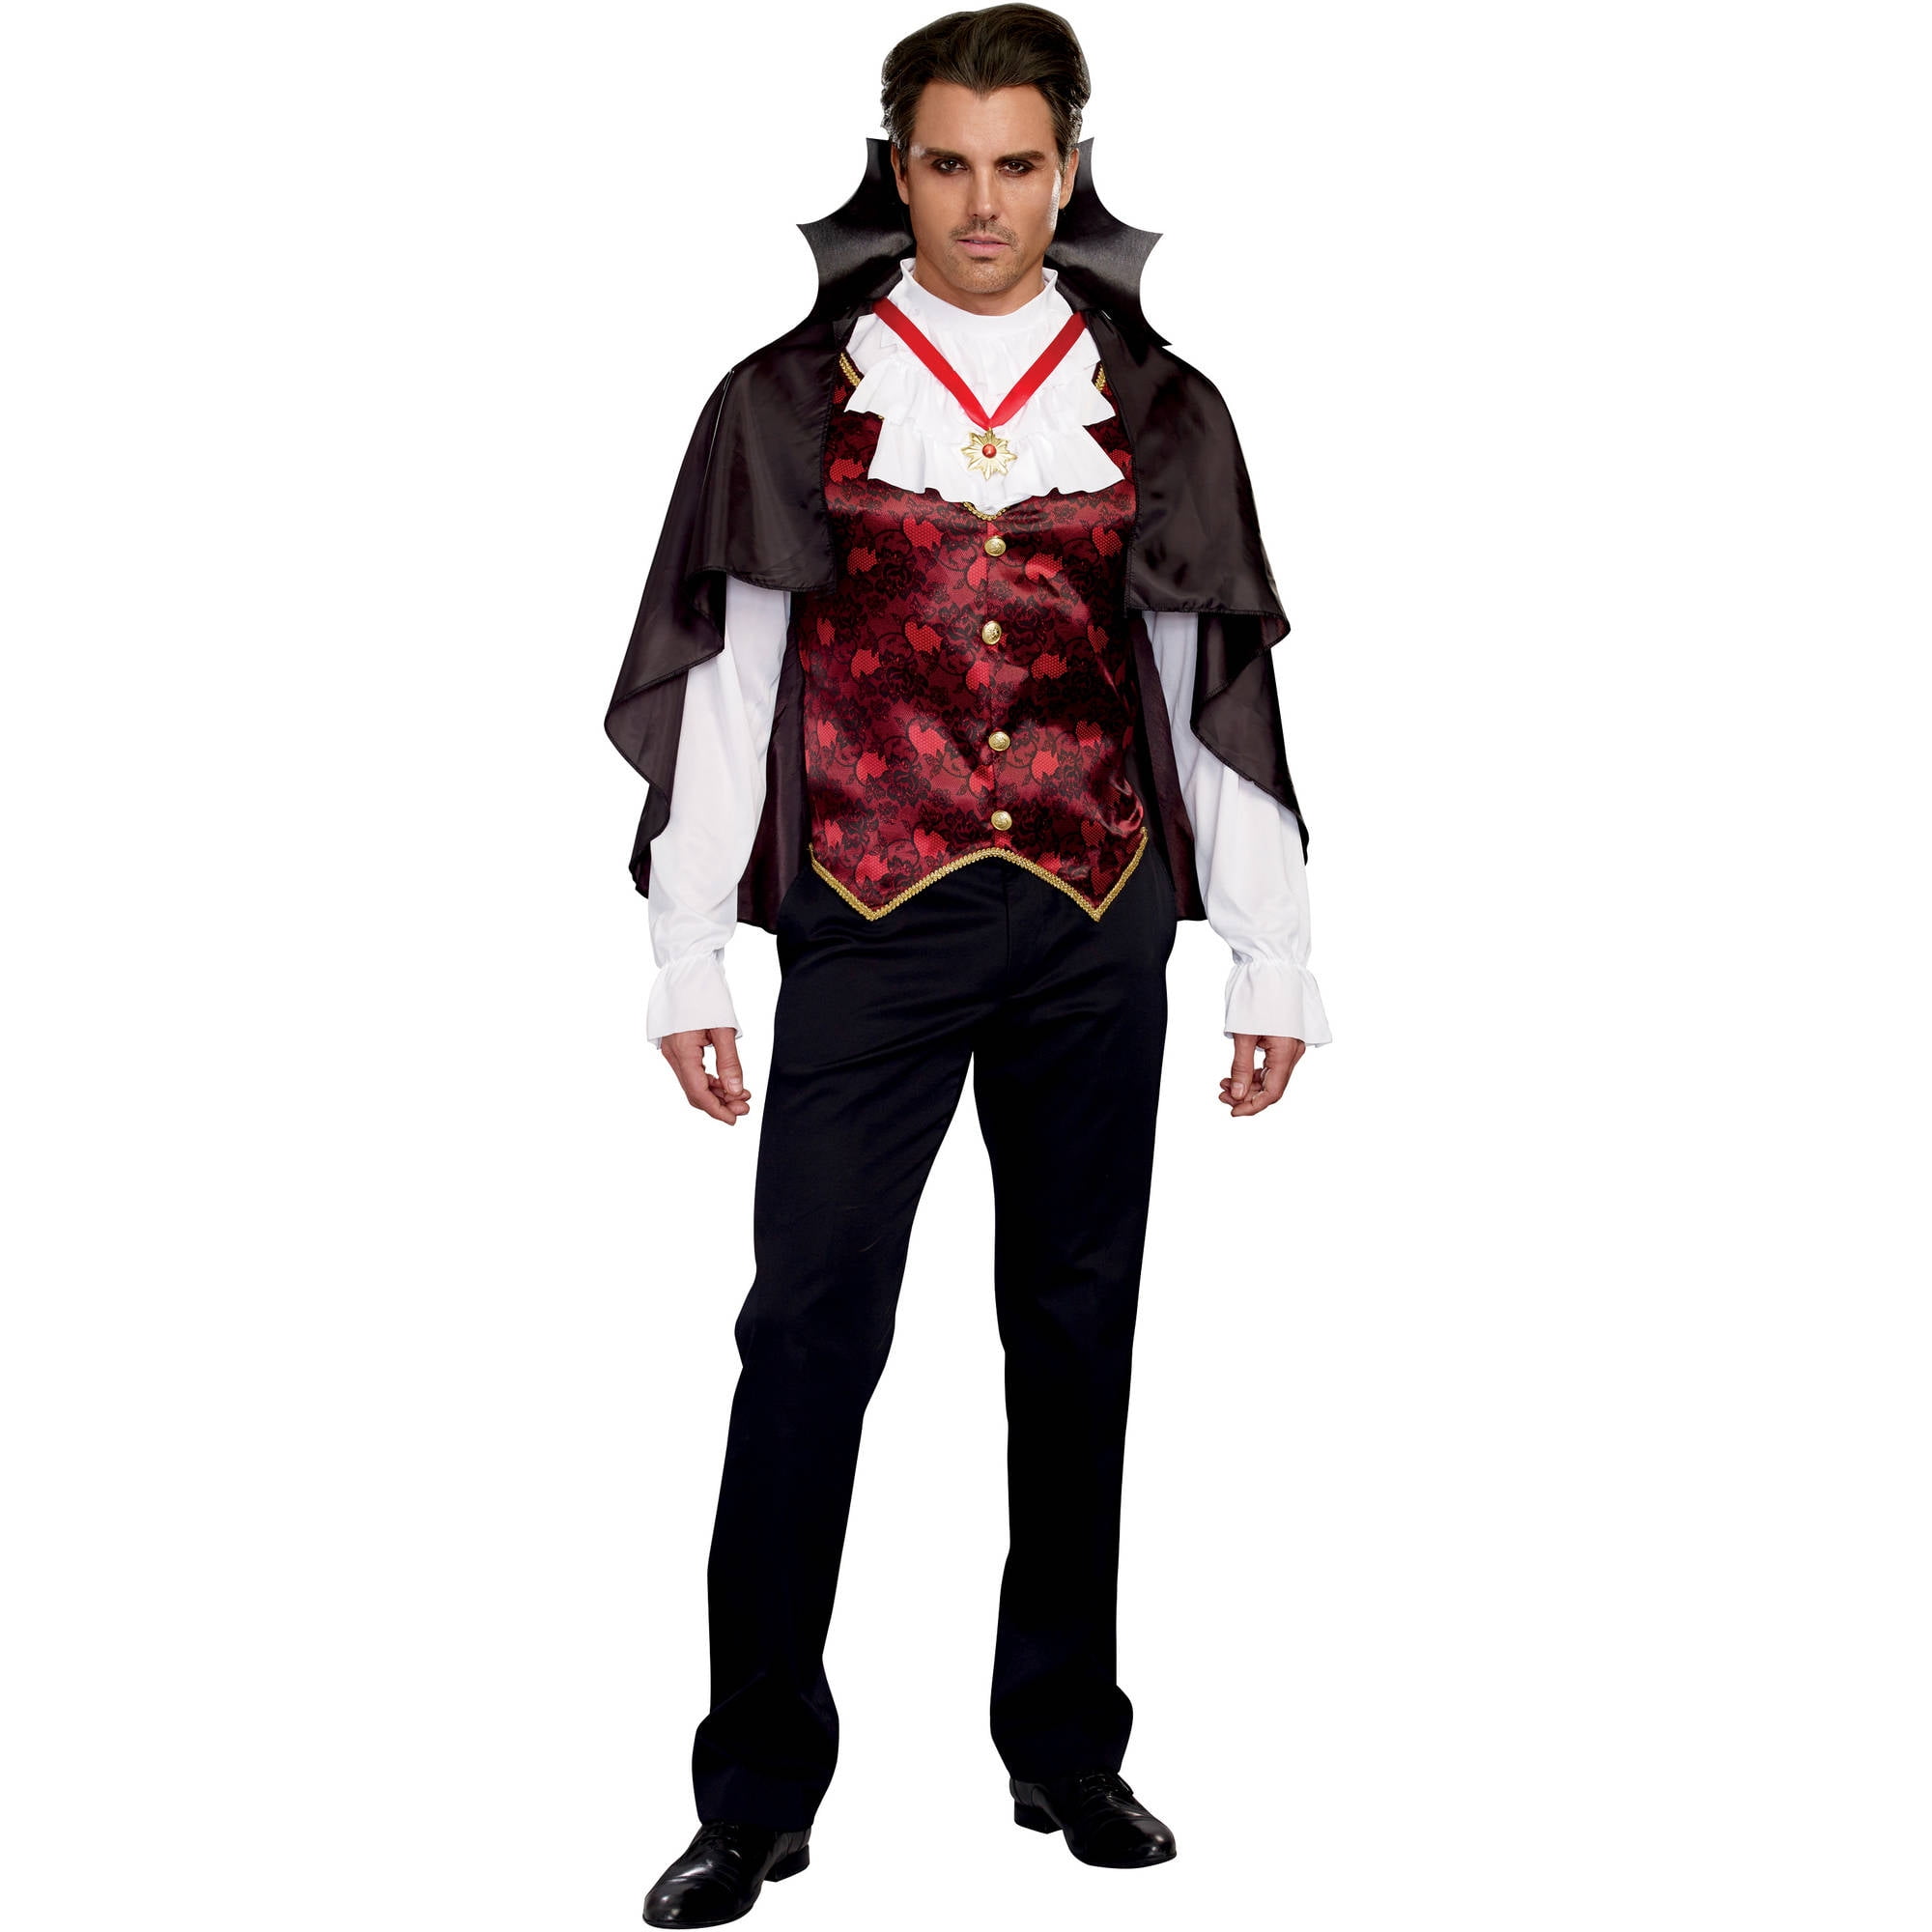 Prince of Darkness Adult Men's Halloween Costume, Medium - Walmart.com